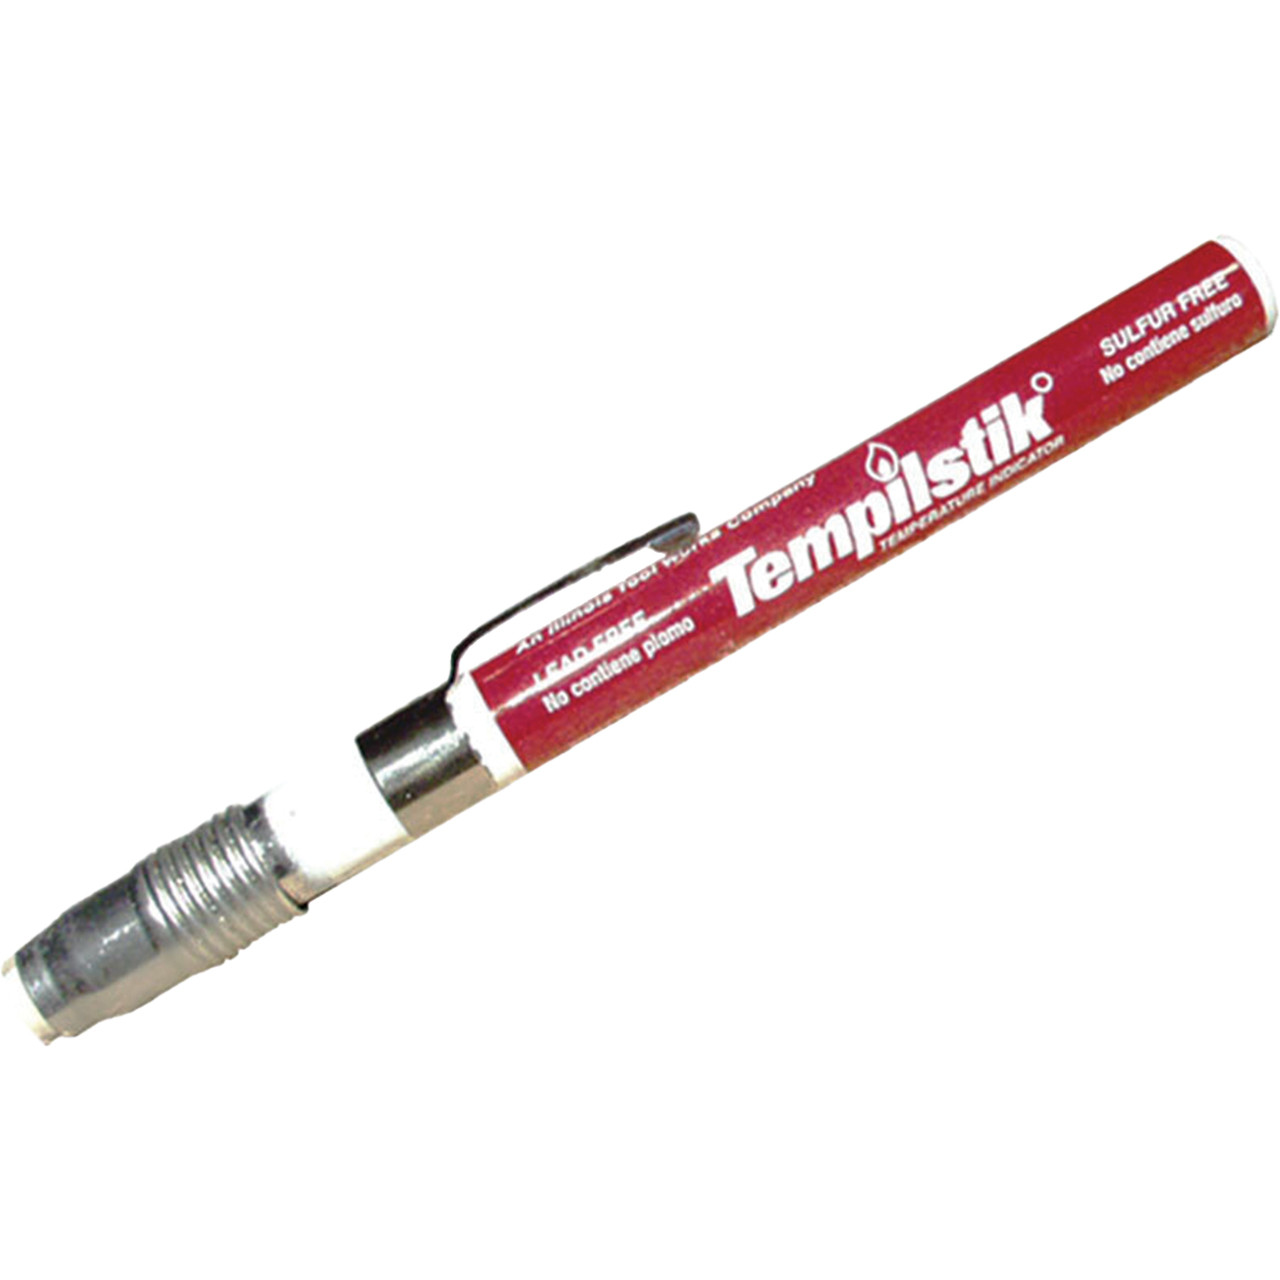 Tempilstik- Temperature Indicating Stick –